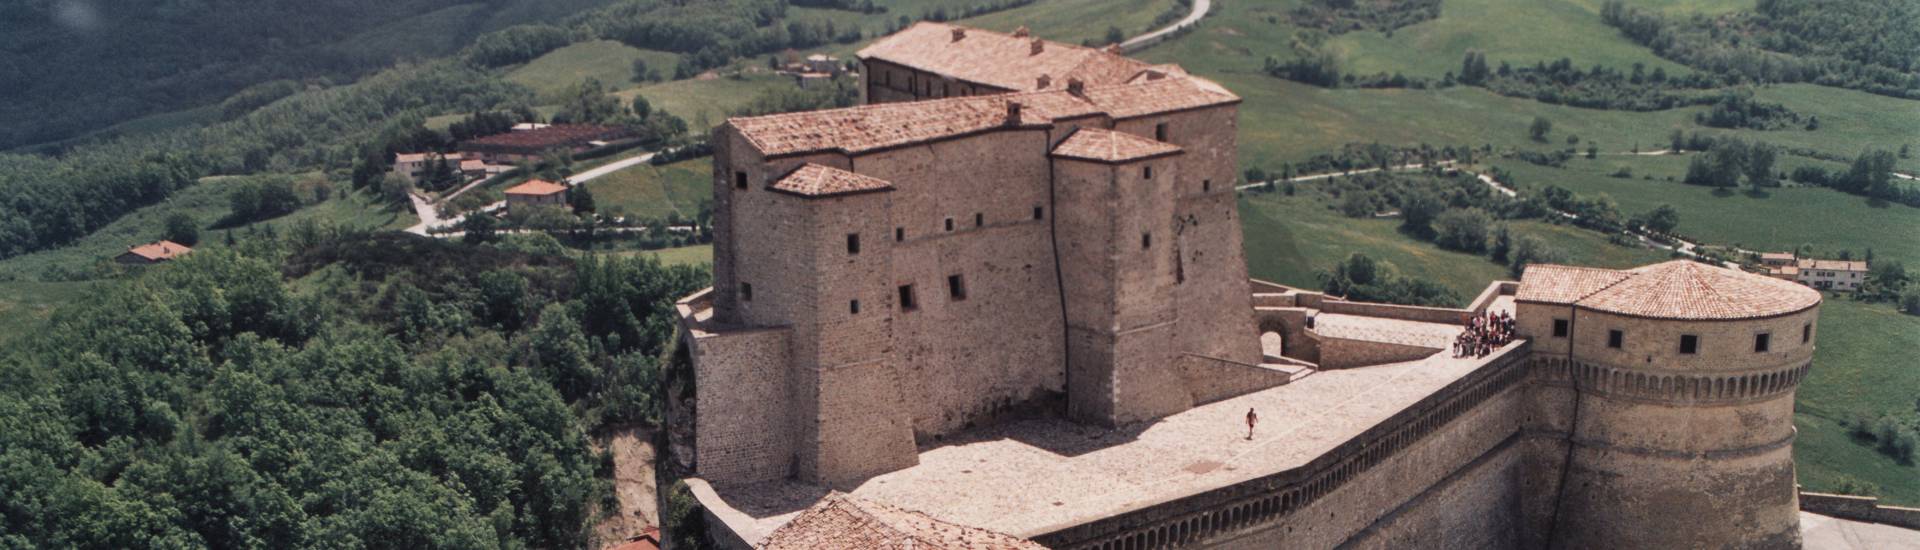 Fortezza di San Leo - Fortezza di San Leo foto di: |Comune di San Leo| - Comune di San Leo